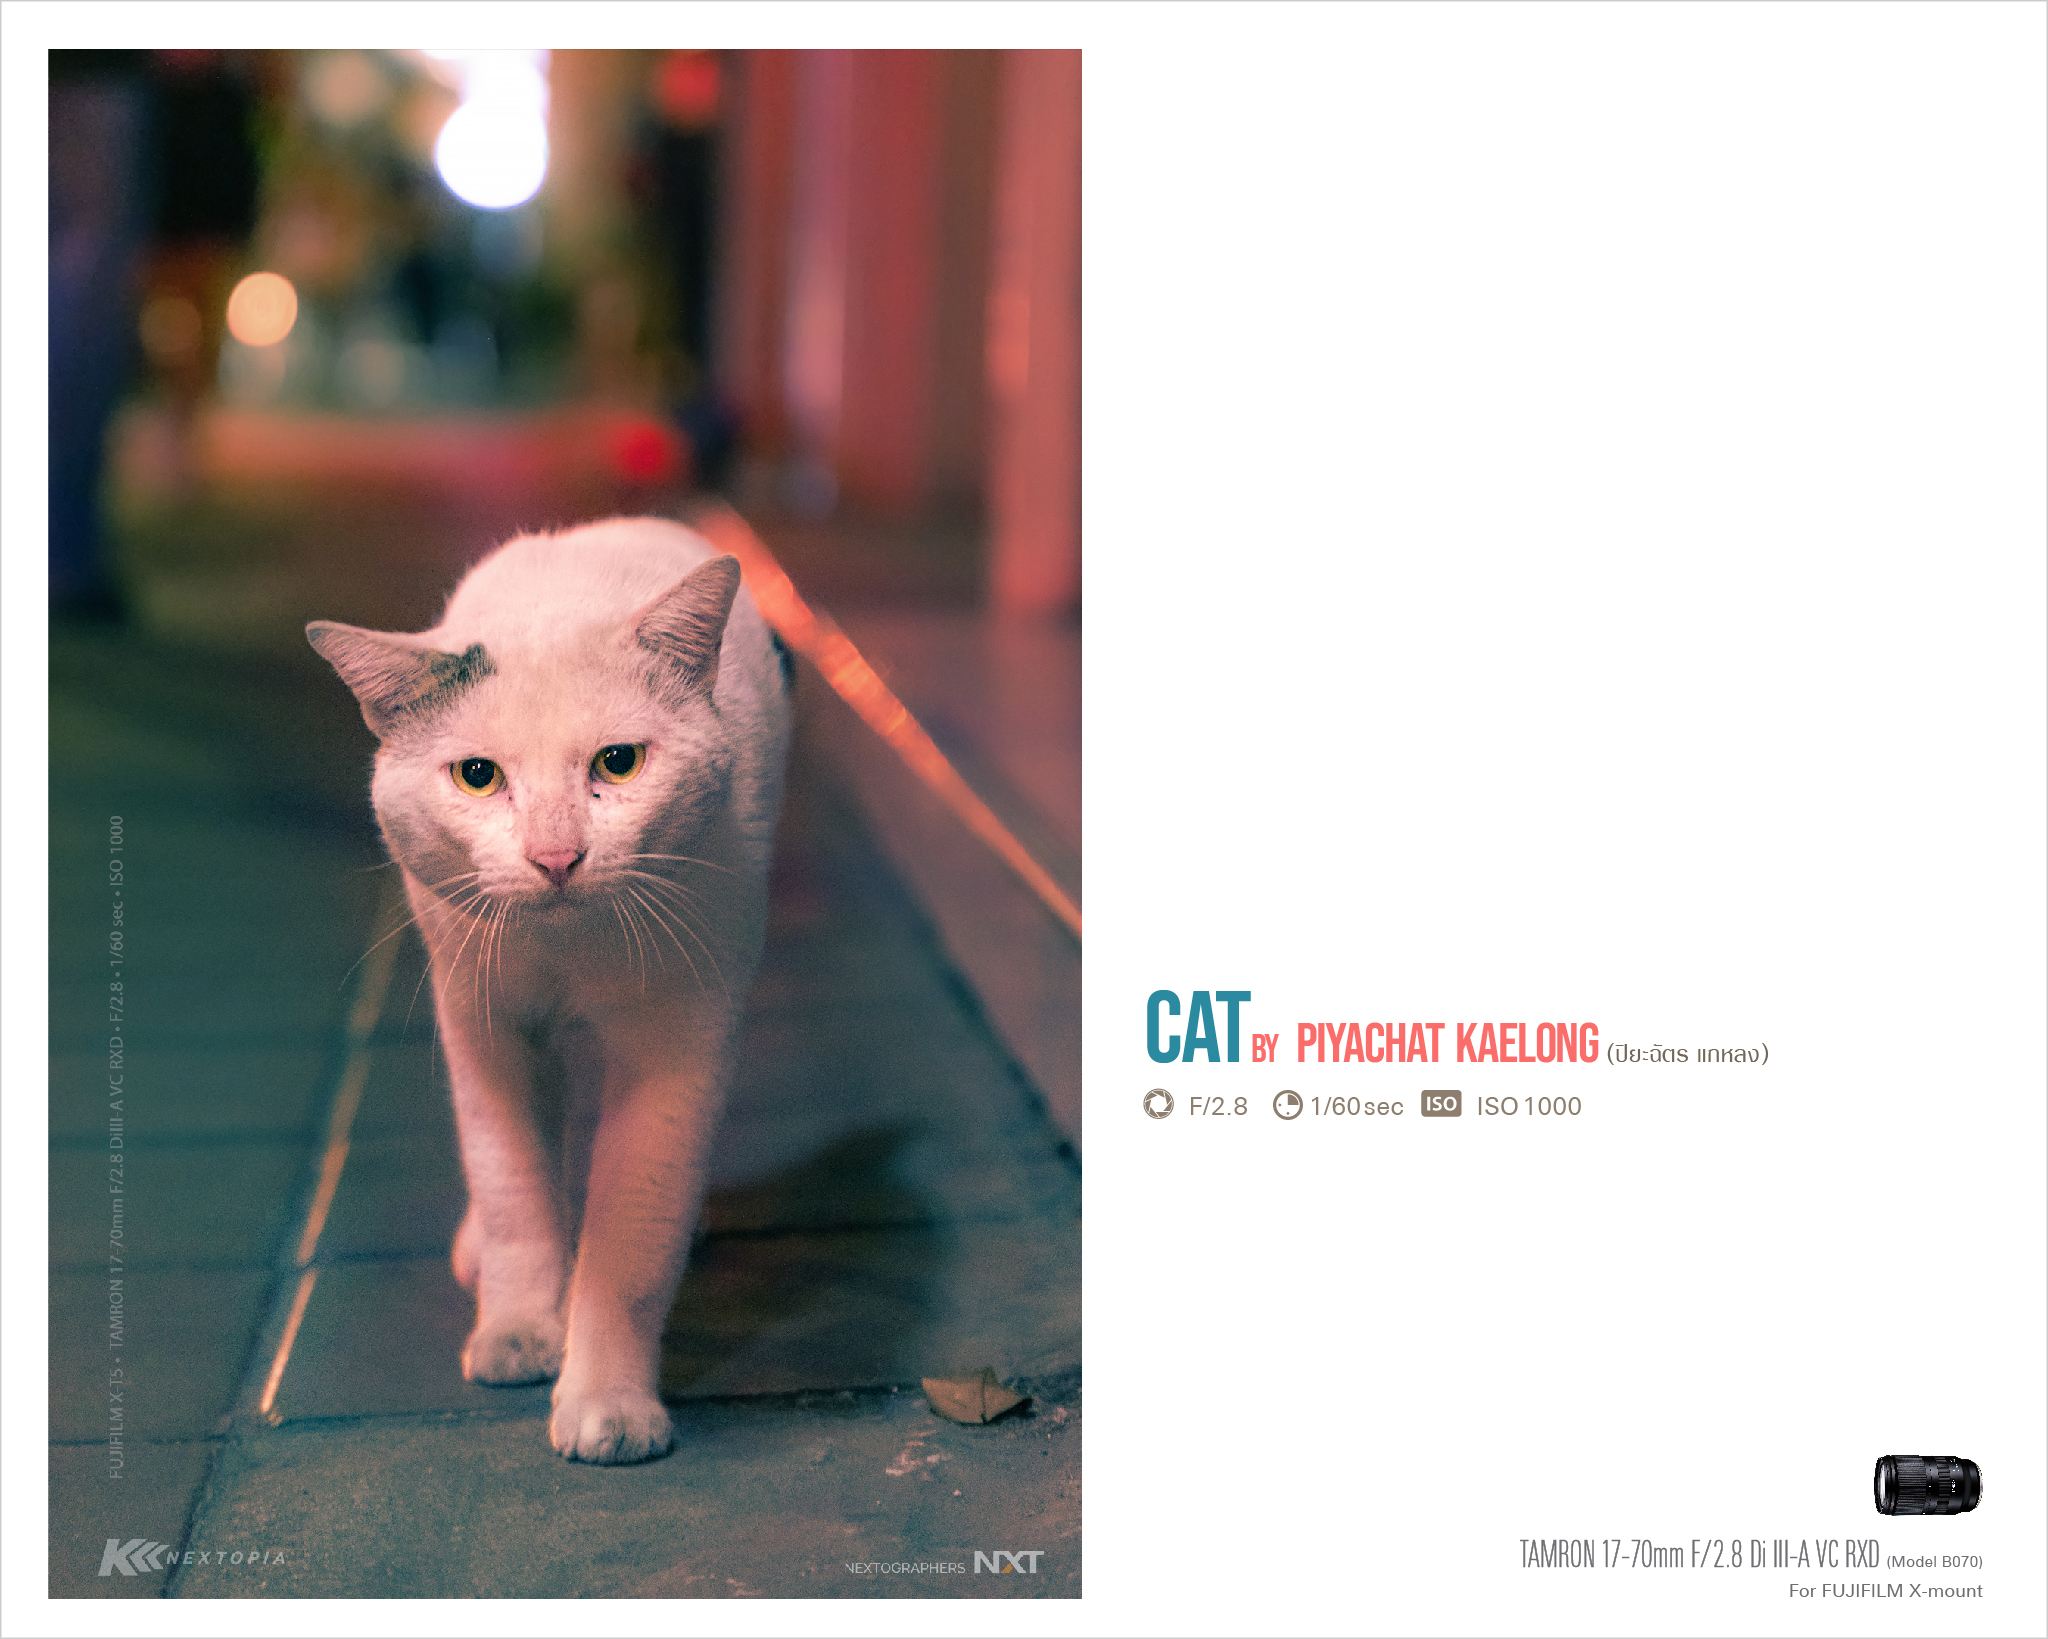 TAMRON PERSPECTIVE :  CAT by Piyachat Kaelong